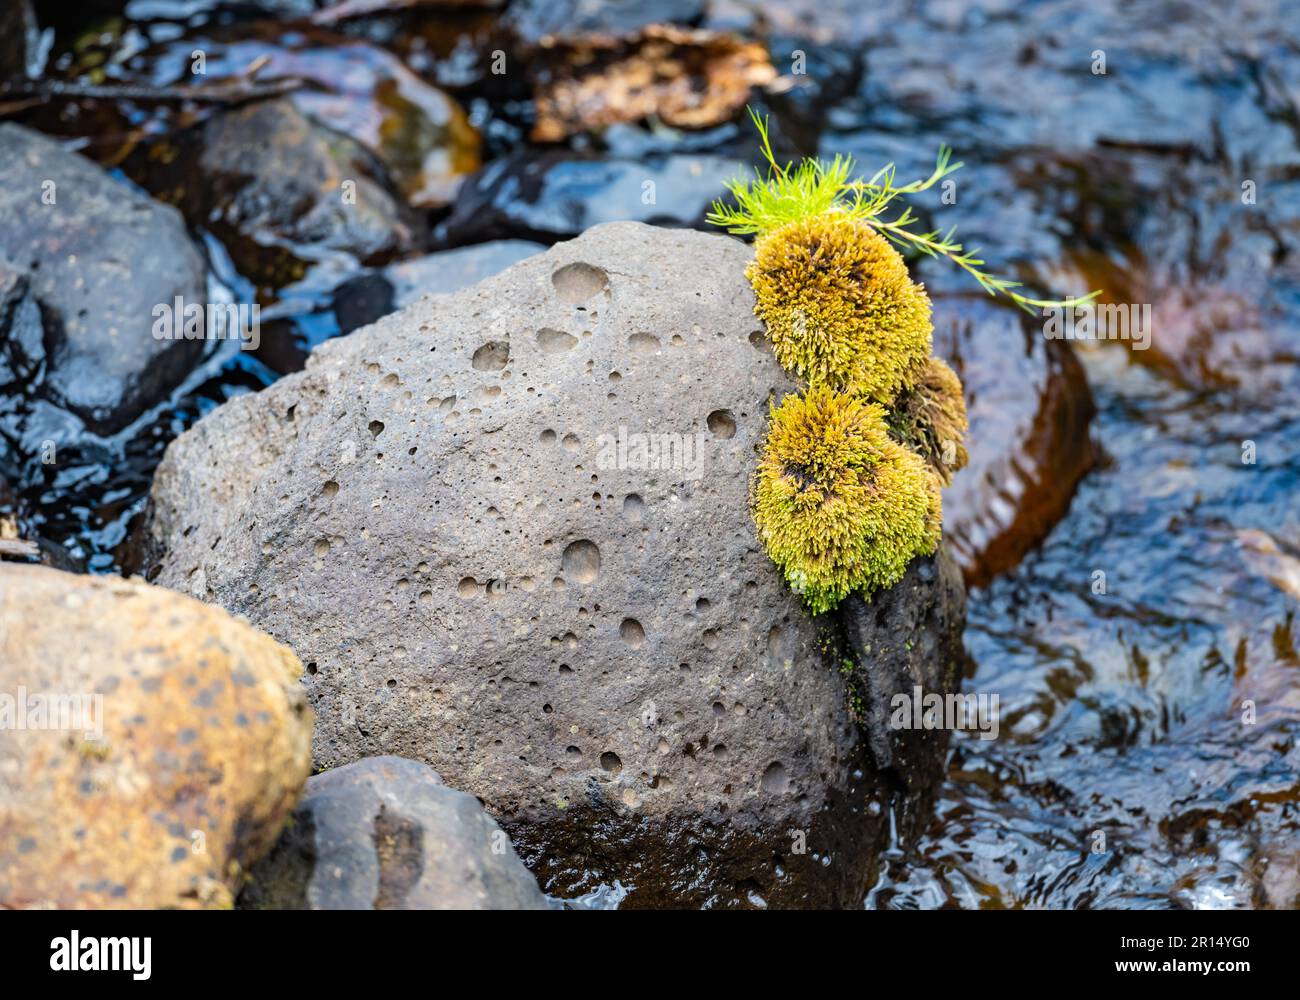 Deux morceaux de mousse vert vif décorent un rocher volcanique près d'un ruisseau. Parc national du Mont Kenya, Kenya, Afrique. Banque D'Images